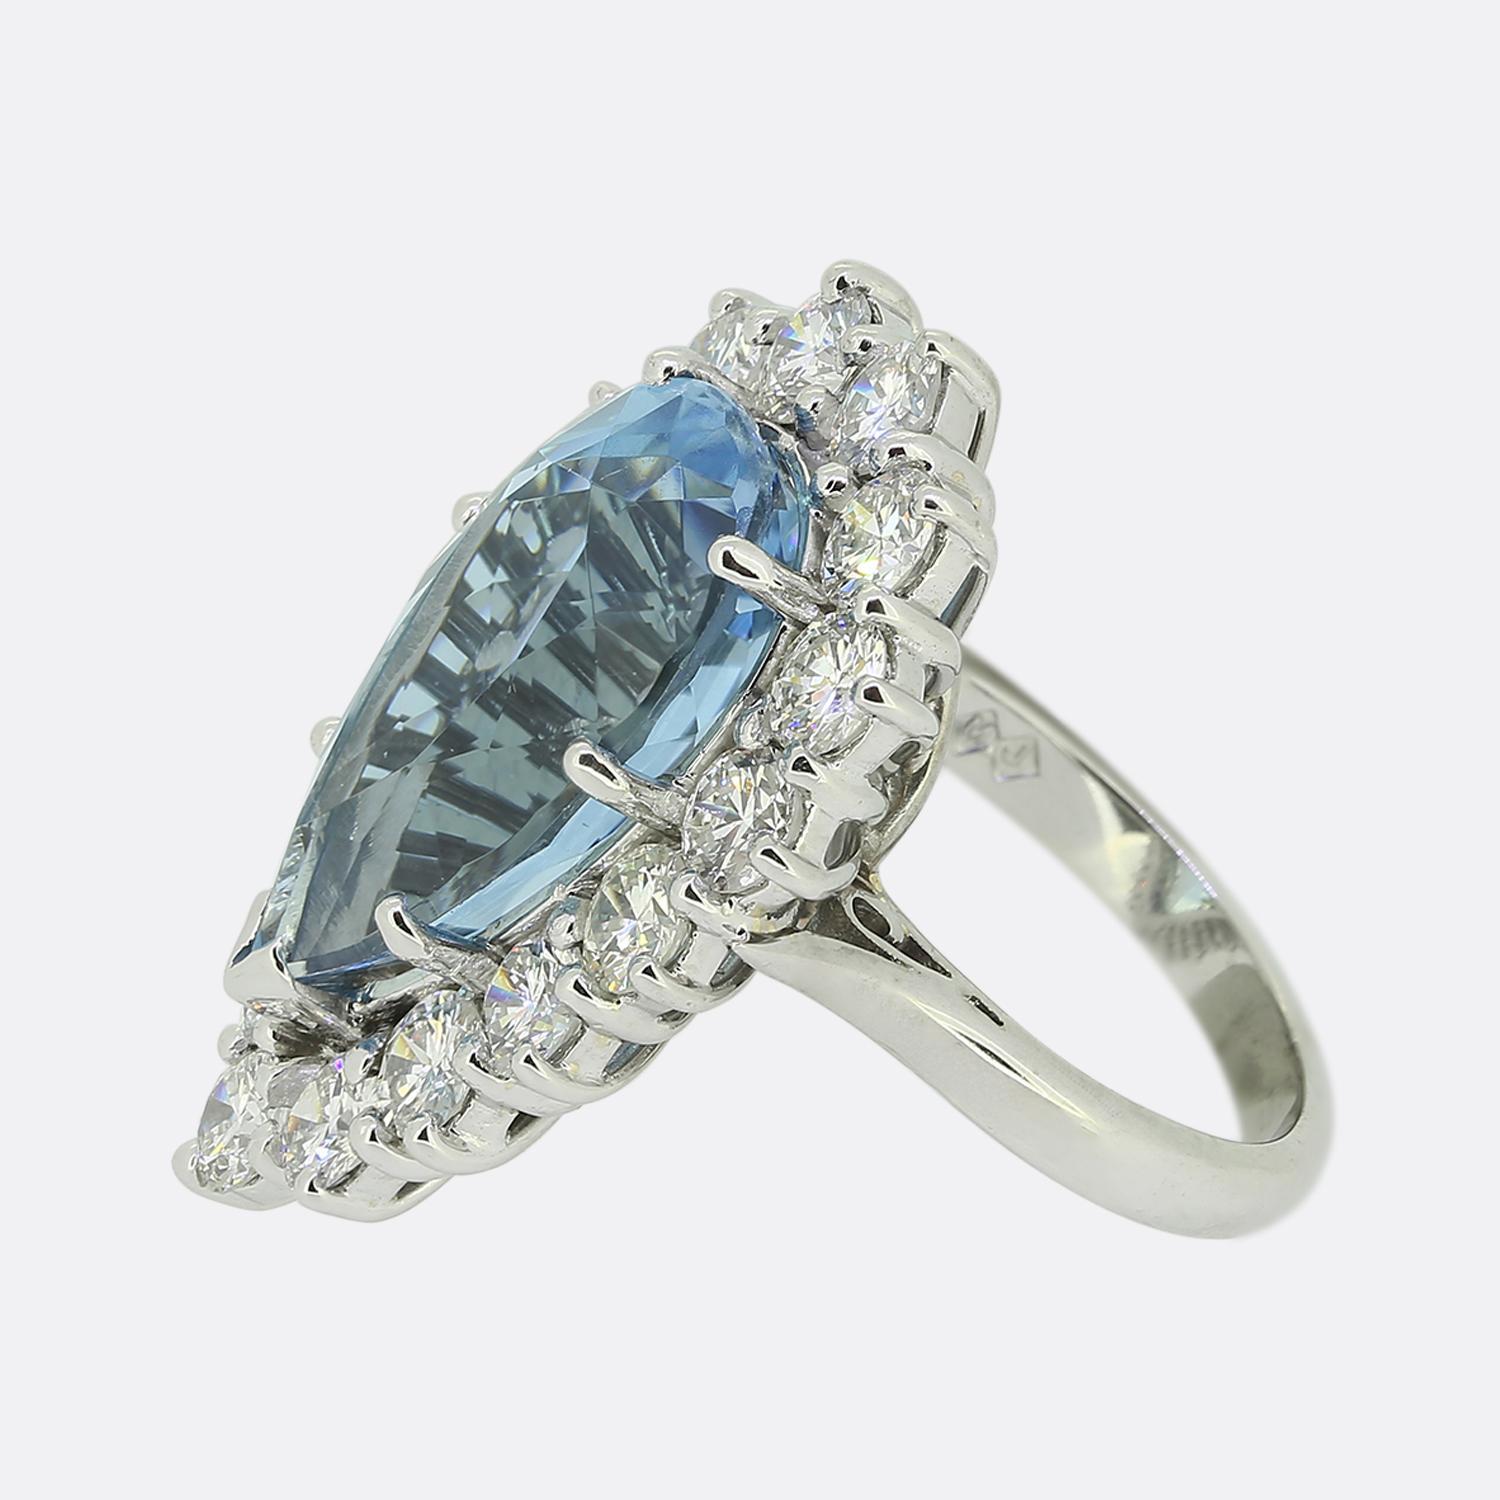 Dies ist eine wunderbare Vintage Aquamarin und Diamant-Cluster-Ring. In der Mitte des Rings befindet sich ein birnenförmiger Aquamarin mit einem schönen, gleichmäßigen mittelblauen Farbton, der durch eine strahlend weiße, mit runden Brillanten